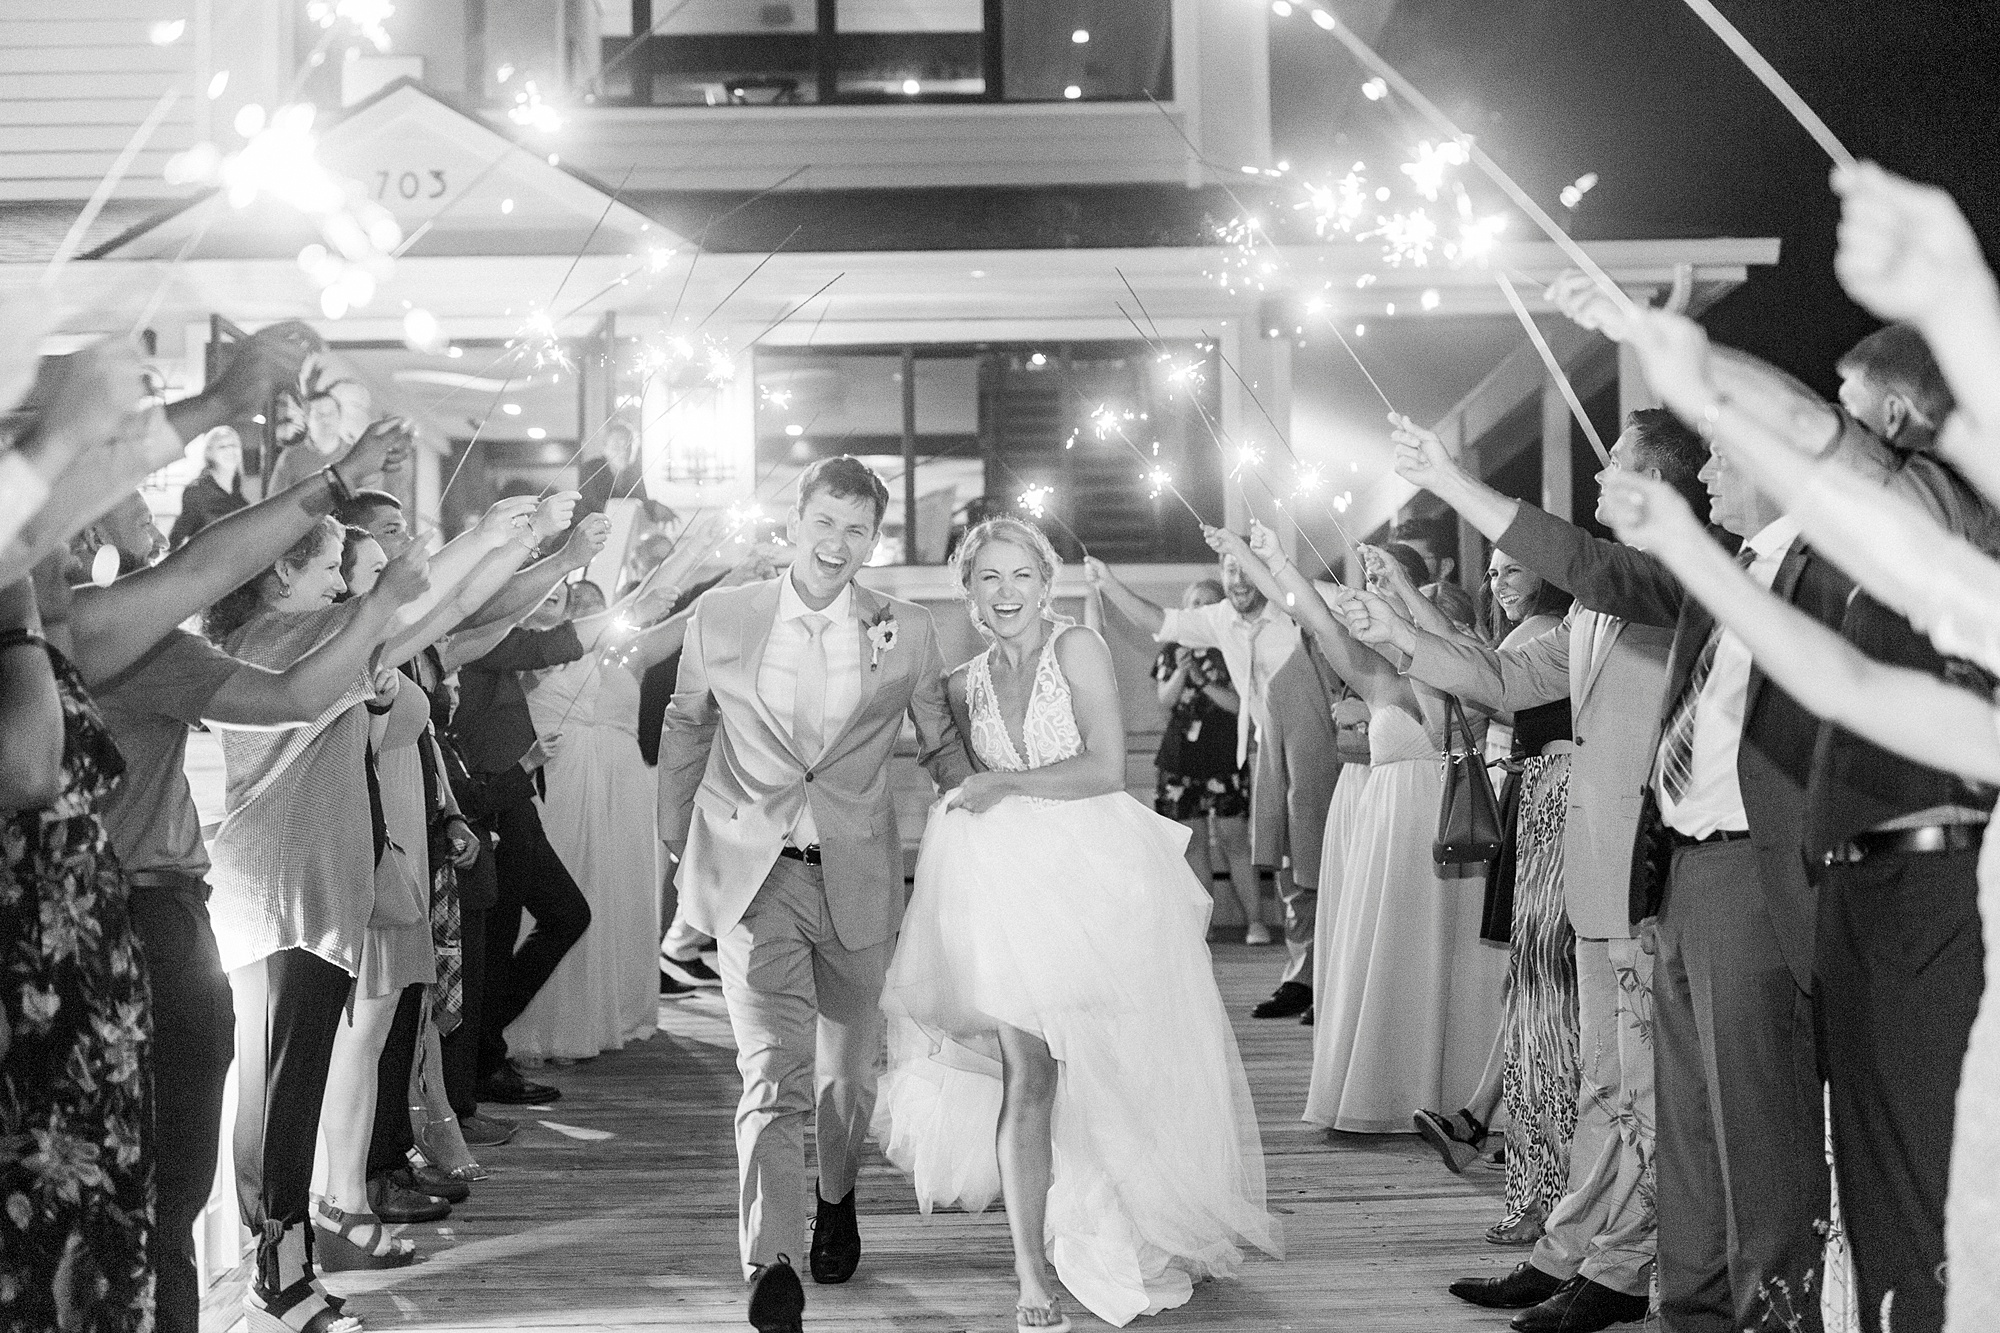 sparkler exit from Wrightsville Beach wedding reception